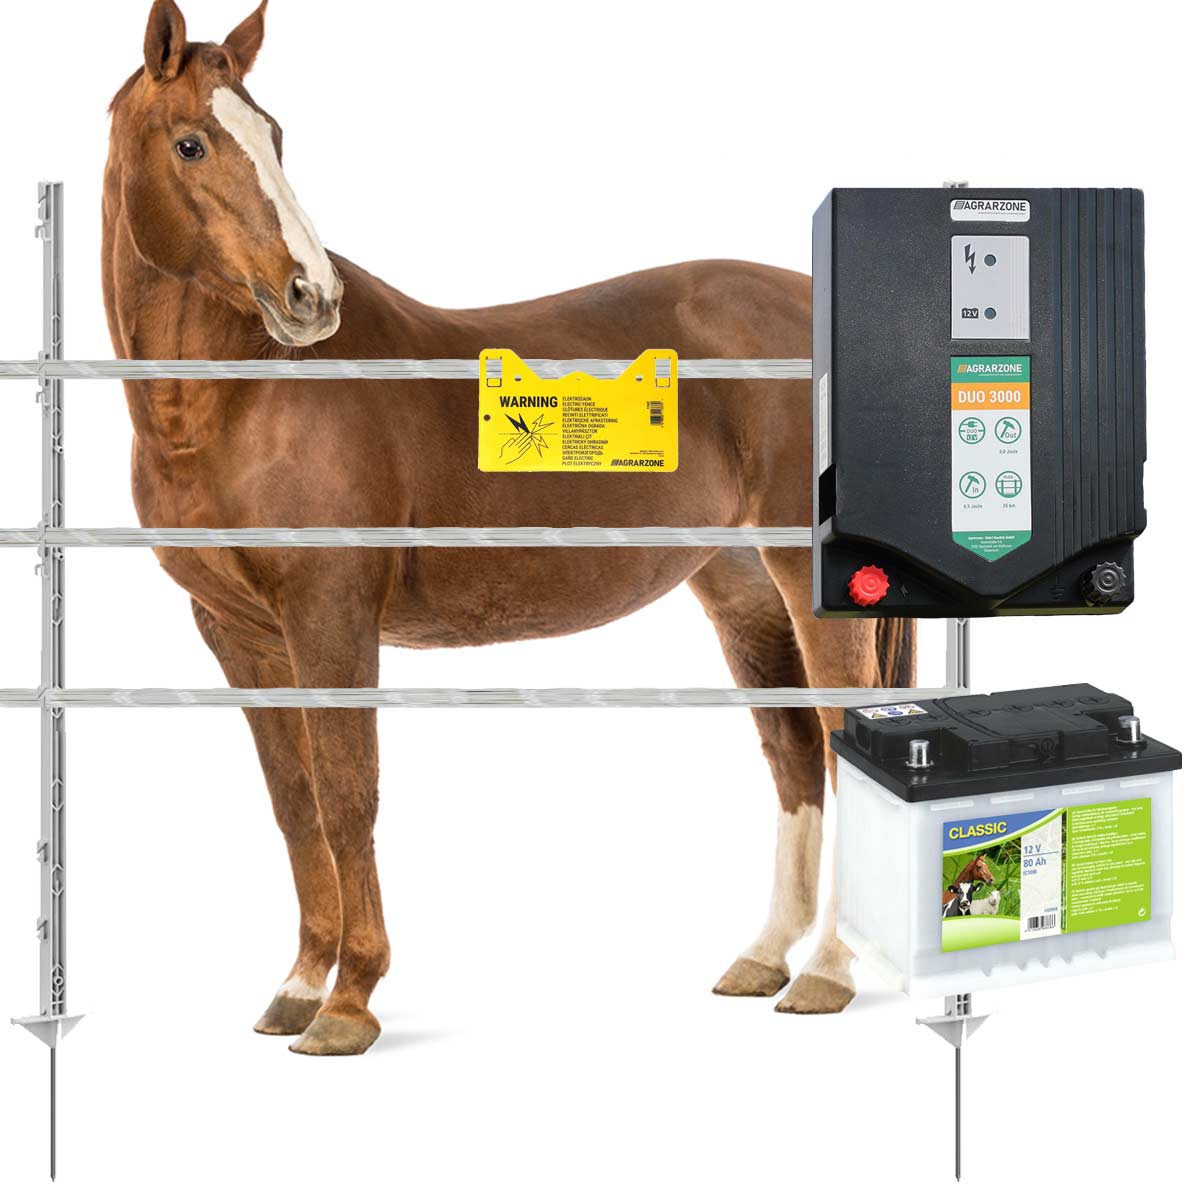 Kit complet de cloture electrique Agrarzone pour chevaux DUO3000 12V/230V, 4,5J, ruban 1200m, 1 porte